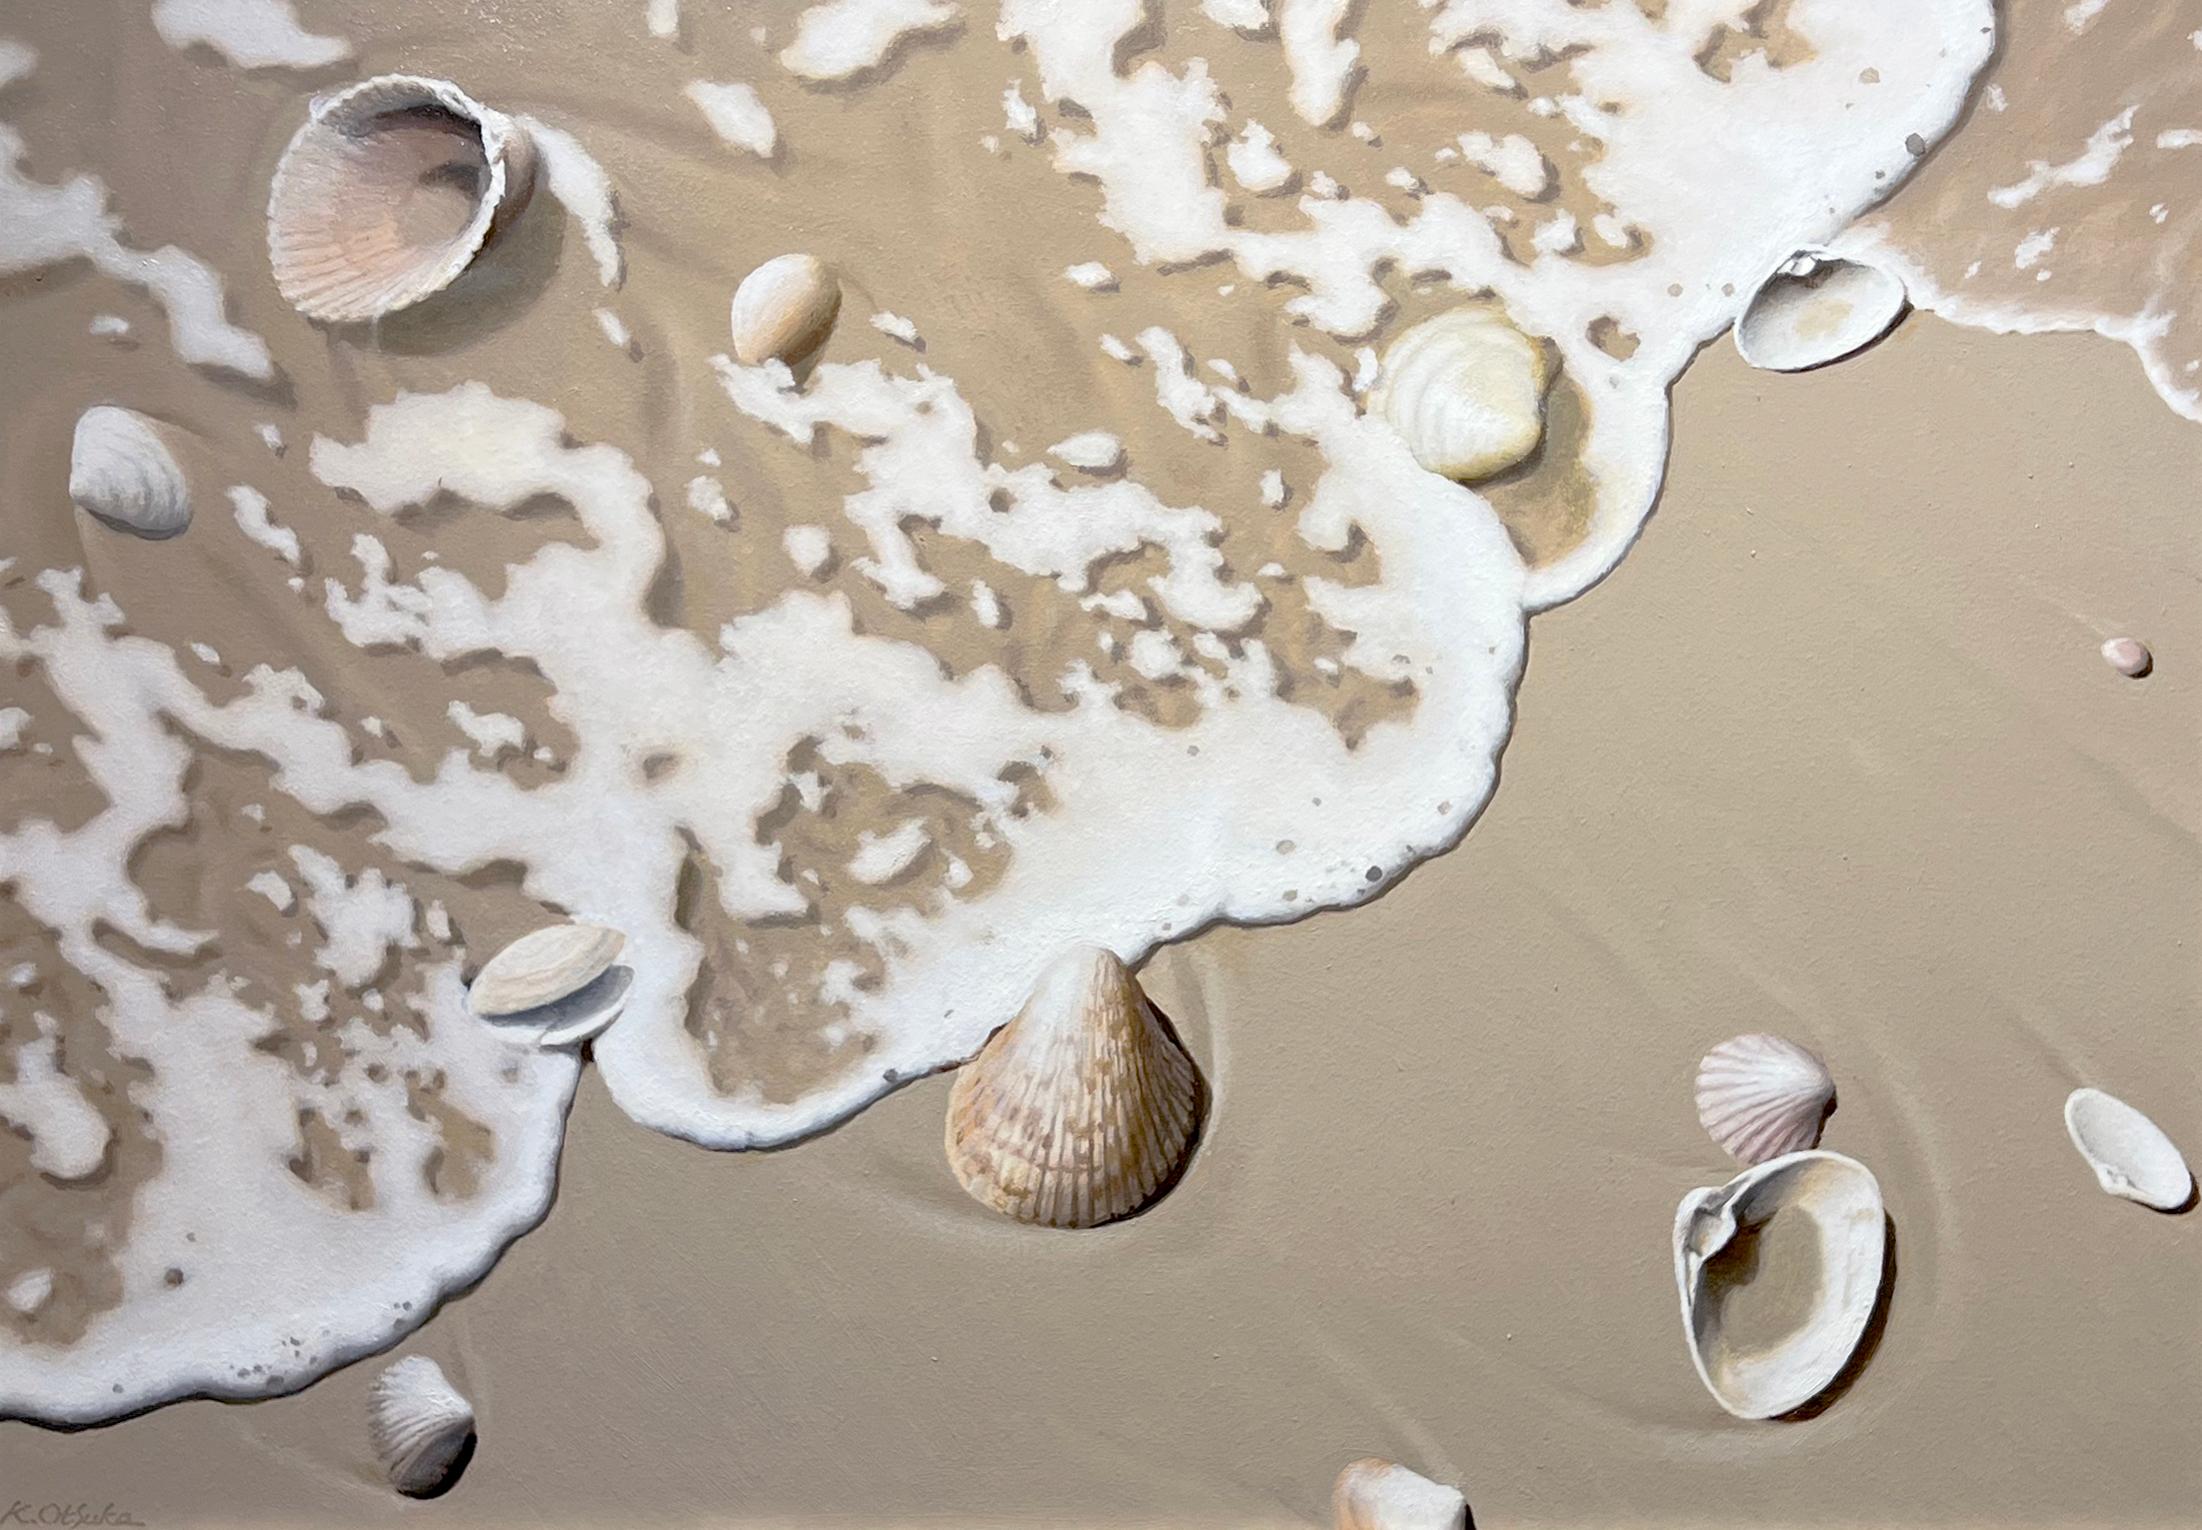 Cette œuvre réaliste, "Rhythm of Timelessness", est une peinture à l'huile sur toile de 20x28 réalisée par l'artiste Ken Otsuka. Elle représente un rivage de plage océanique lumineux sous le soleil de l'après-midi. Sentez l'air salin de la mer